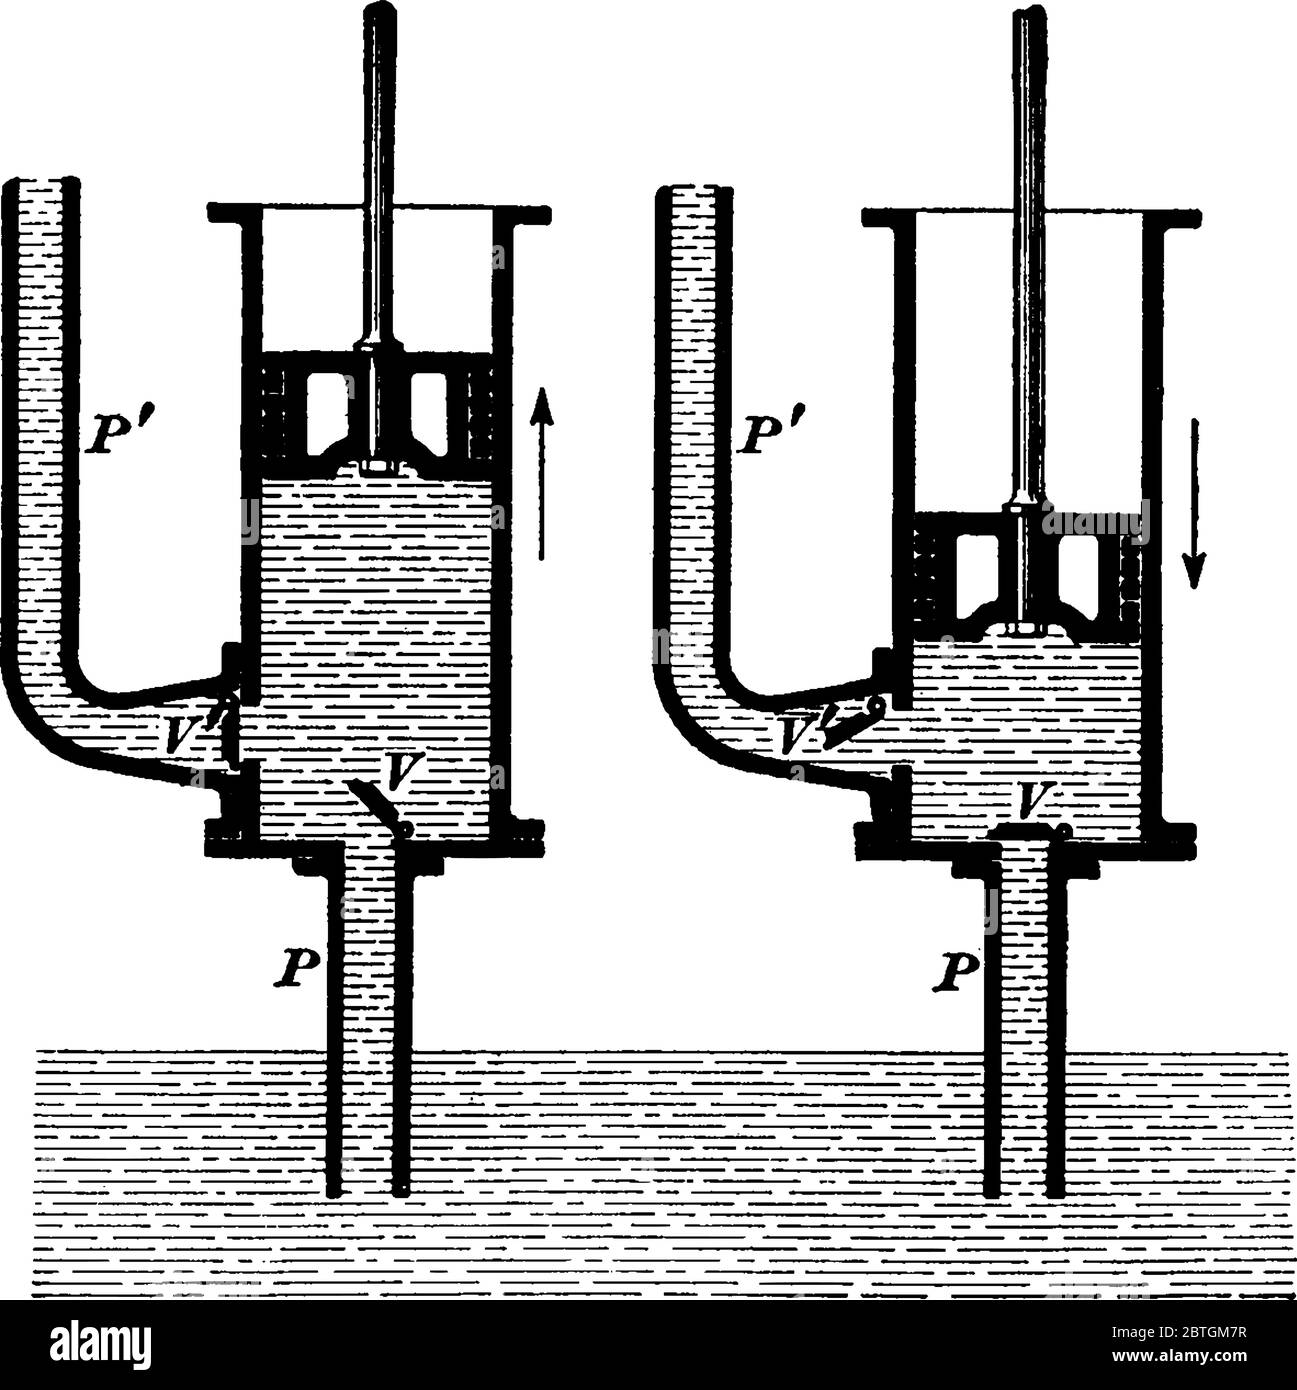 Diese Abbildung stellt Die Saugpumpe dar, bei der eine Pumpe zum Zeichnen  von Flüssigkeit durch ein Rohr in eine Kammer gelangt, die durch einen  Kolben, eine Vintage-Linie oder e geleert wurde Stock-Vektorgrafik 